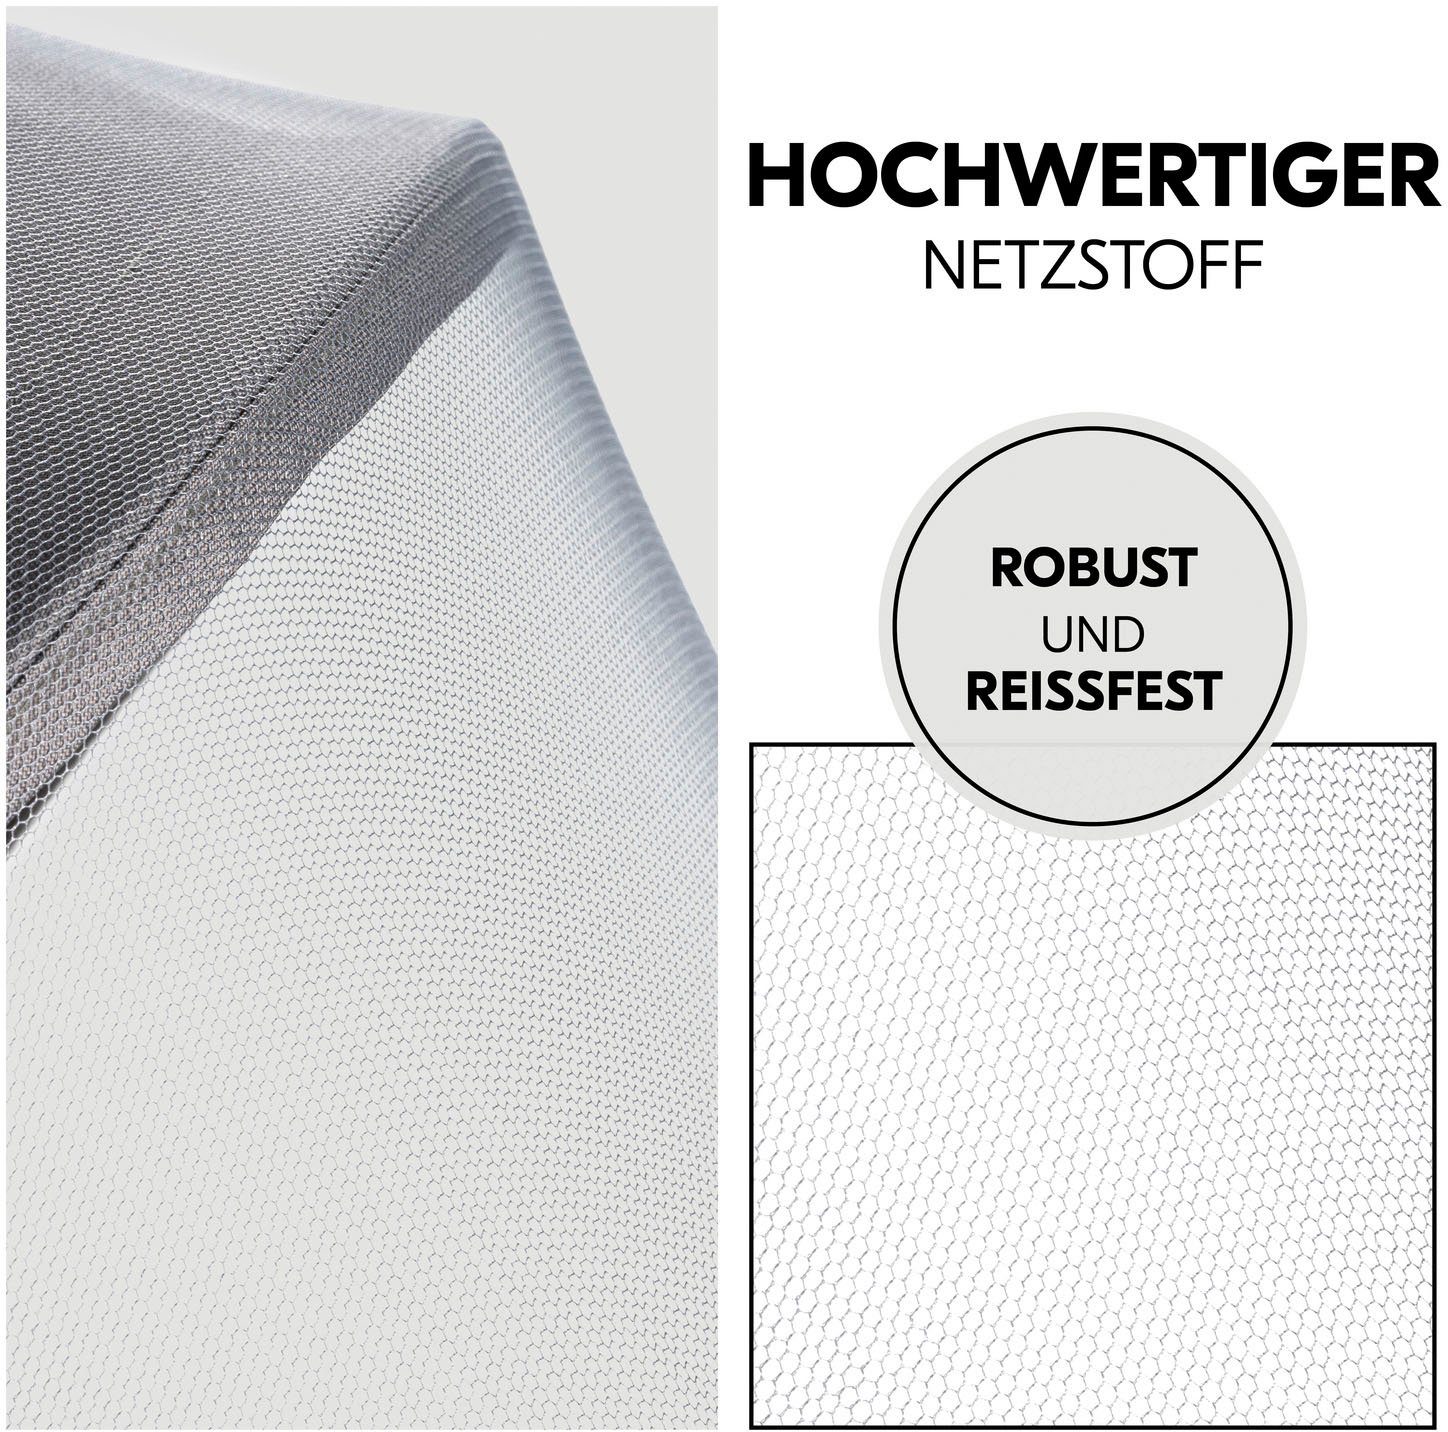 Hauck Kinderwagen-Insektenschutz Pushchair Mosquito Net, universal Grey